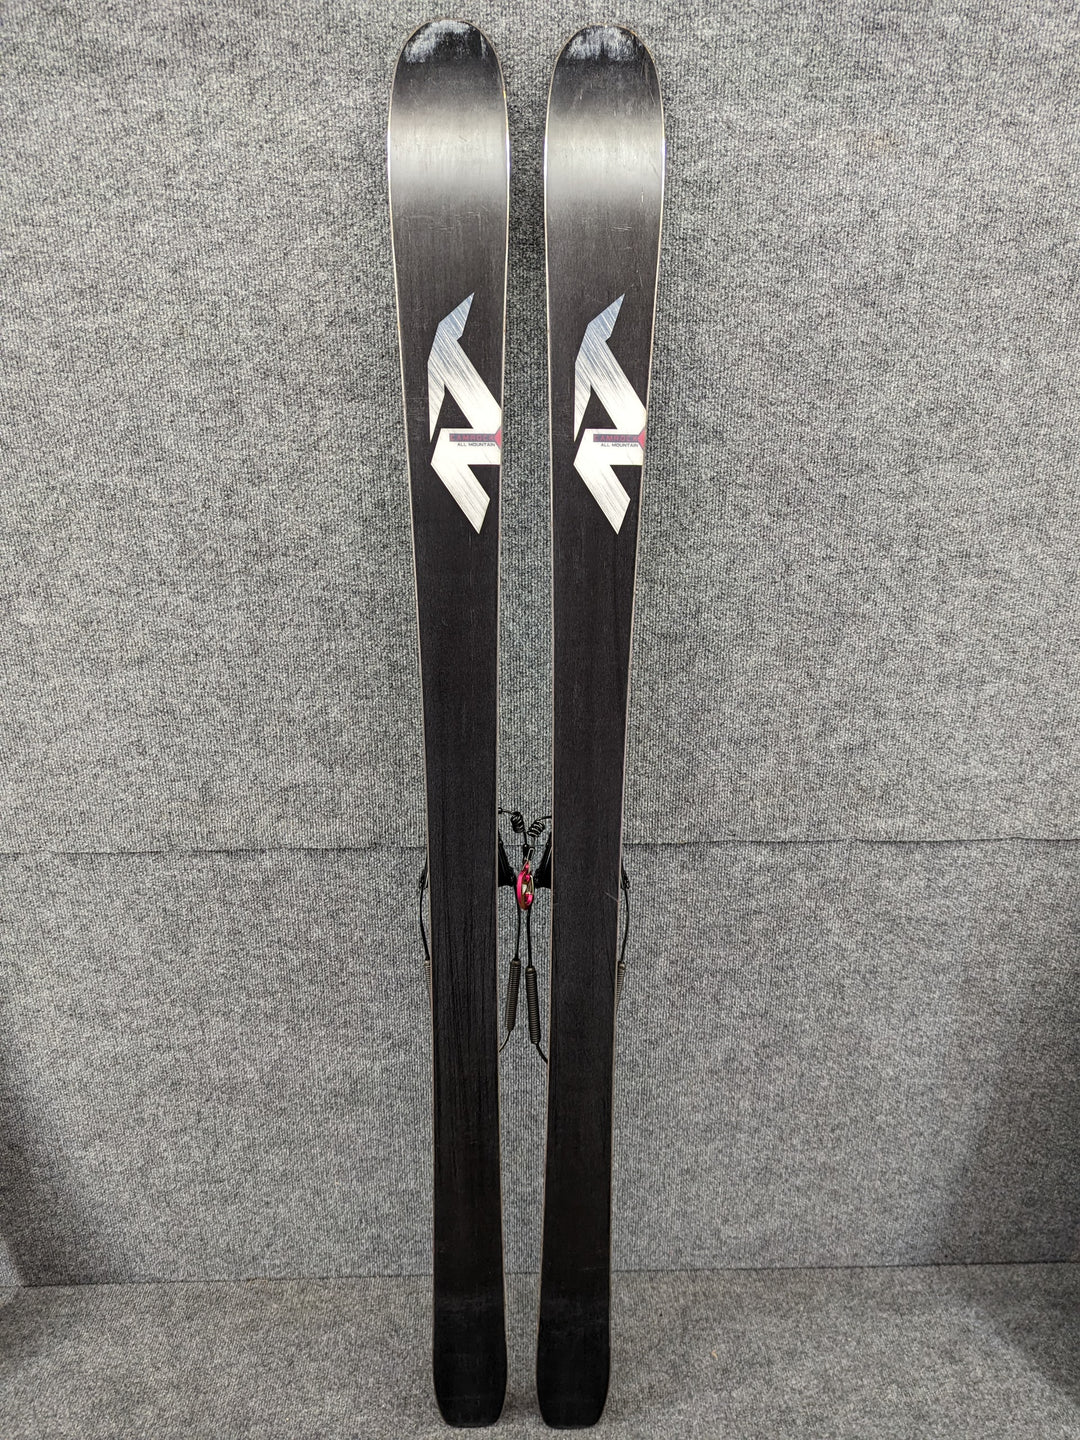 Nordica Length 169 cm/66.5" Men's Telemark Skis